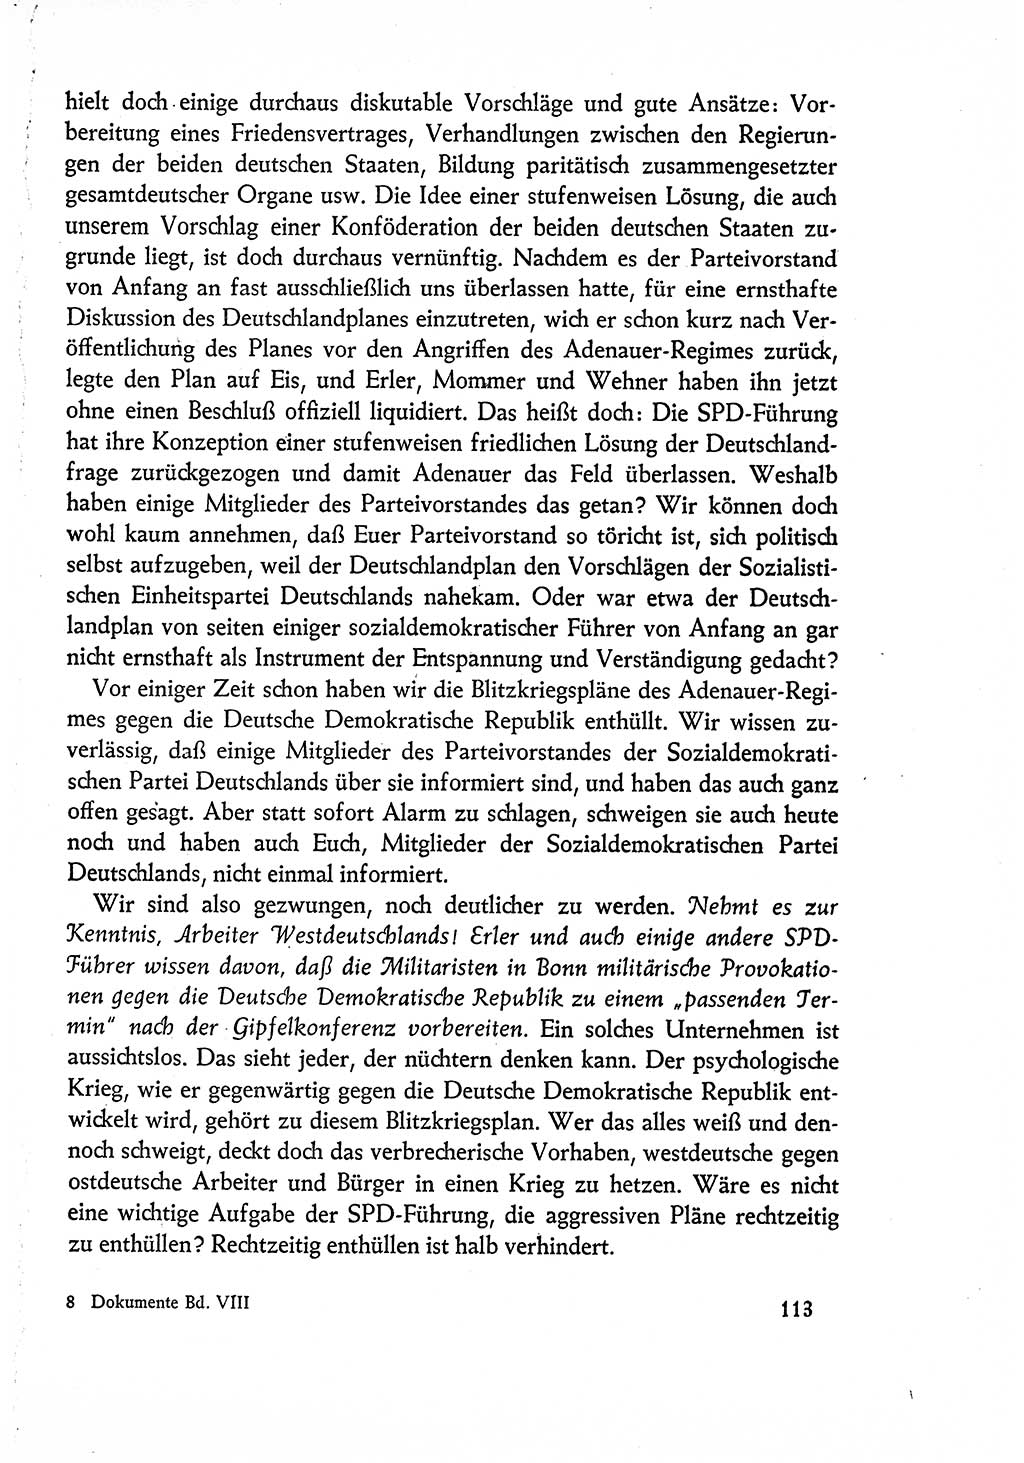 Dokumente der Sozialistischen Einheitspartei Deutschlands (SED) [Deutsche Demokratische Republik (DDR)] 1960-1961, Seite 113 (Dok. SED DDR 1960-1961, S. 113)